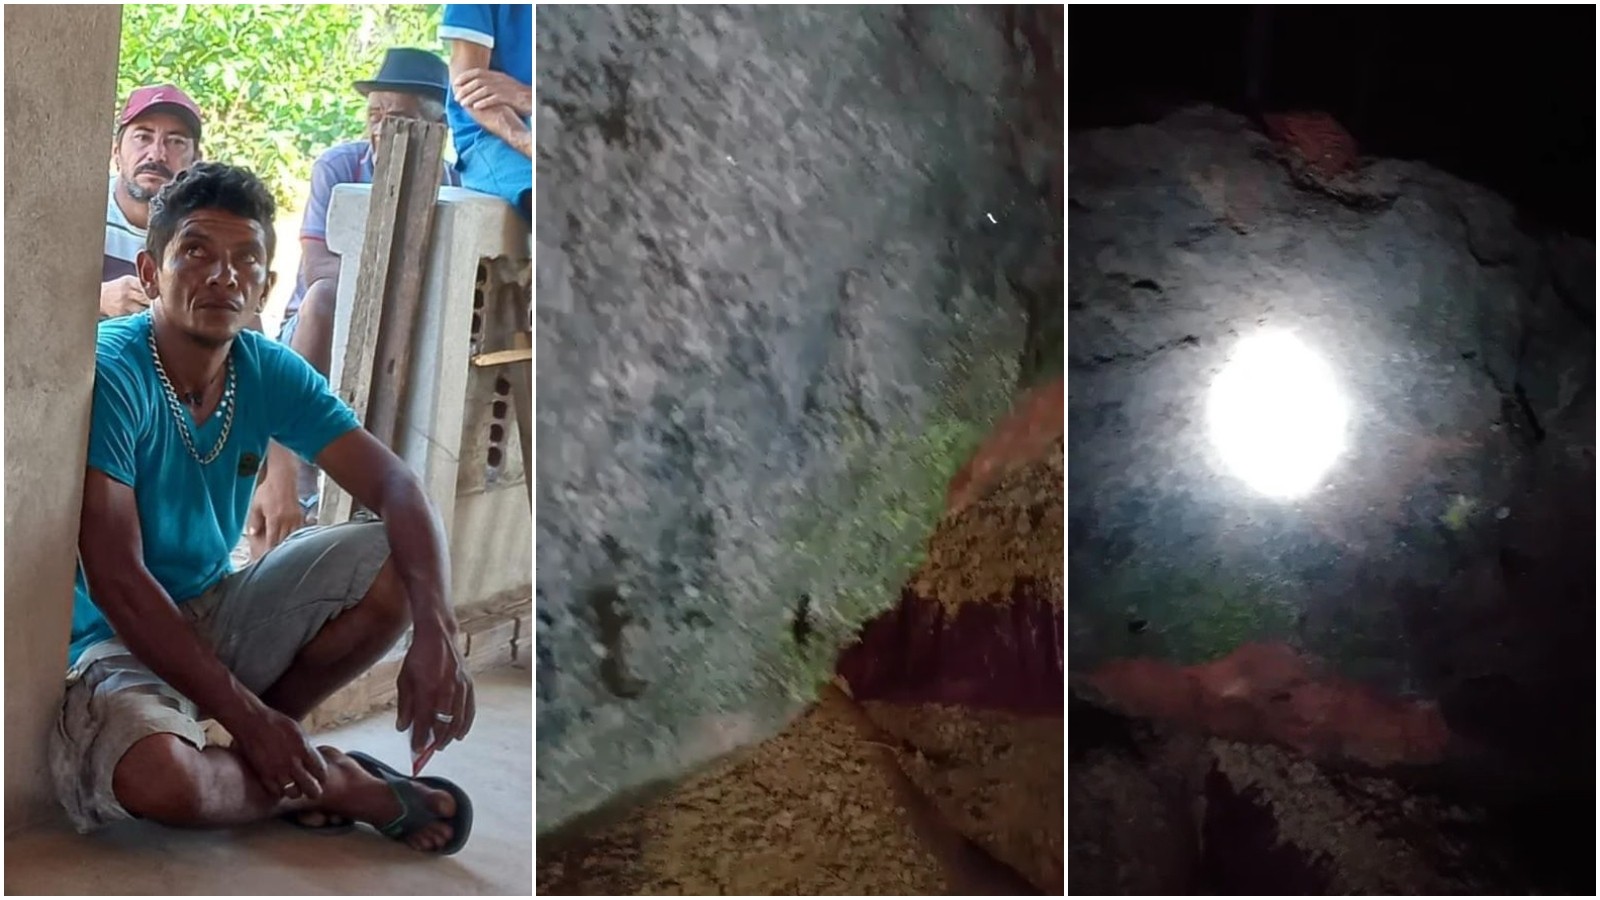 Pedra gigante despenca de morro e mata agricultor no Ceará